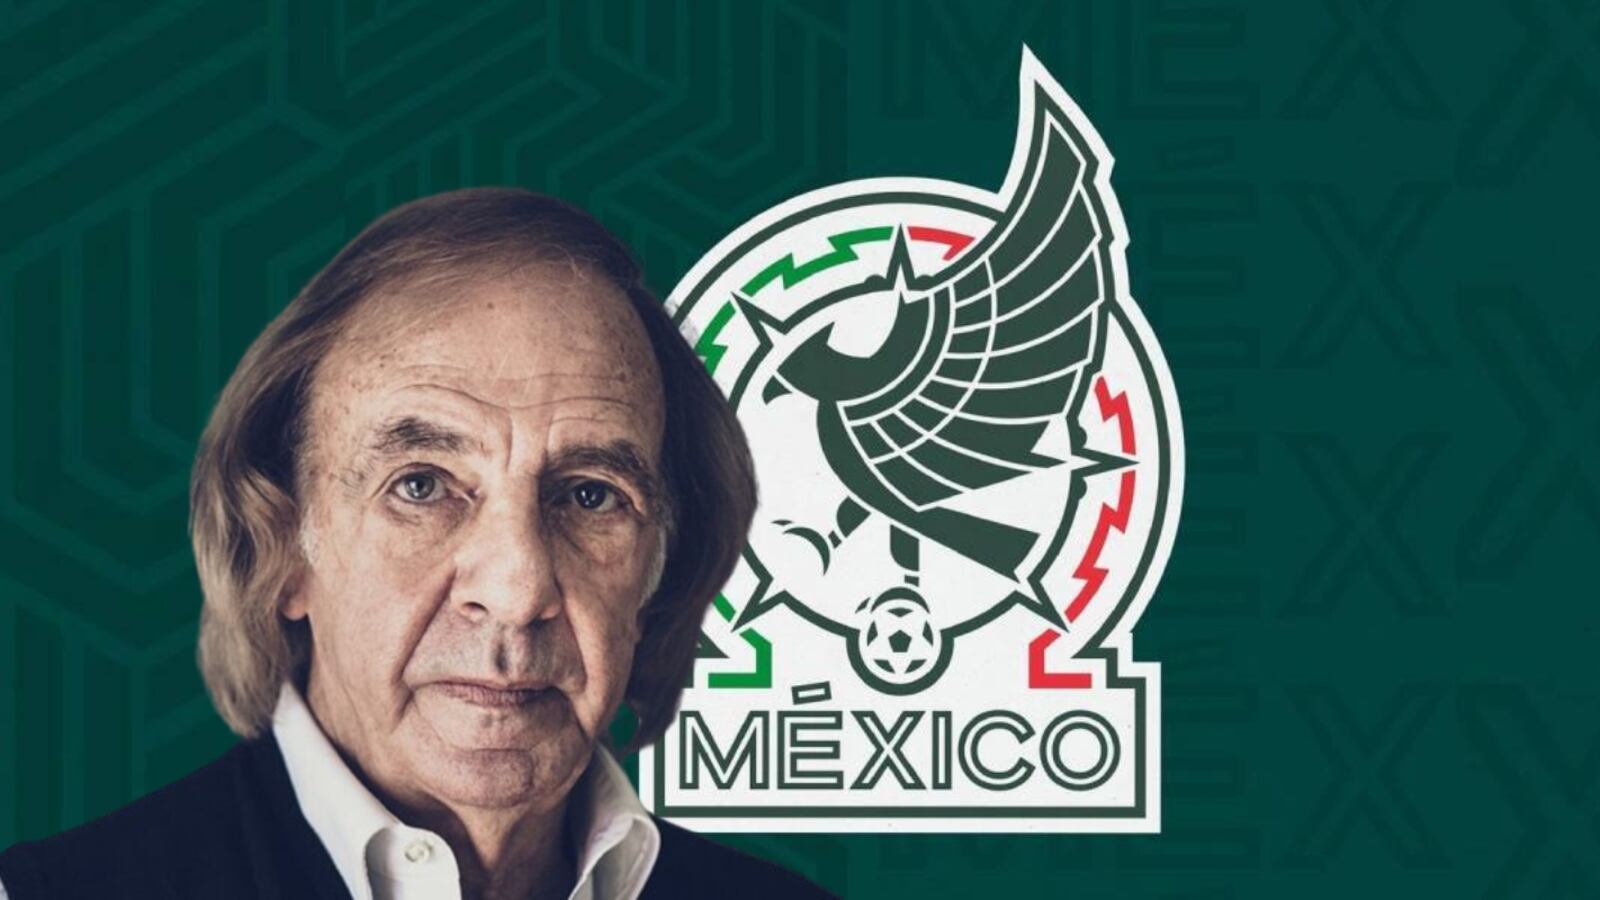 El jugador mexicano que sorprendió a César Luis Menotti por su personalidad